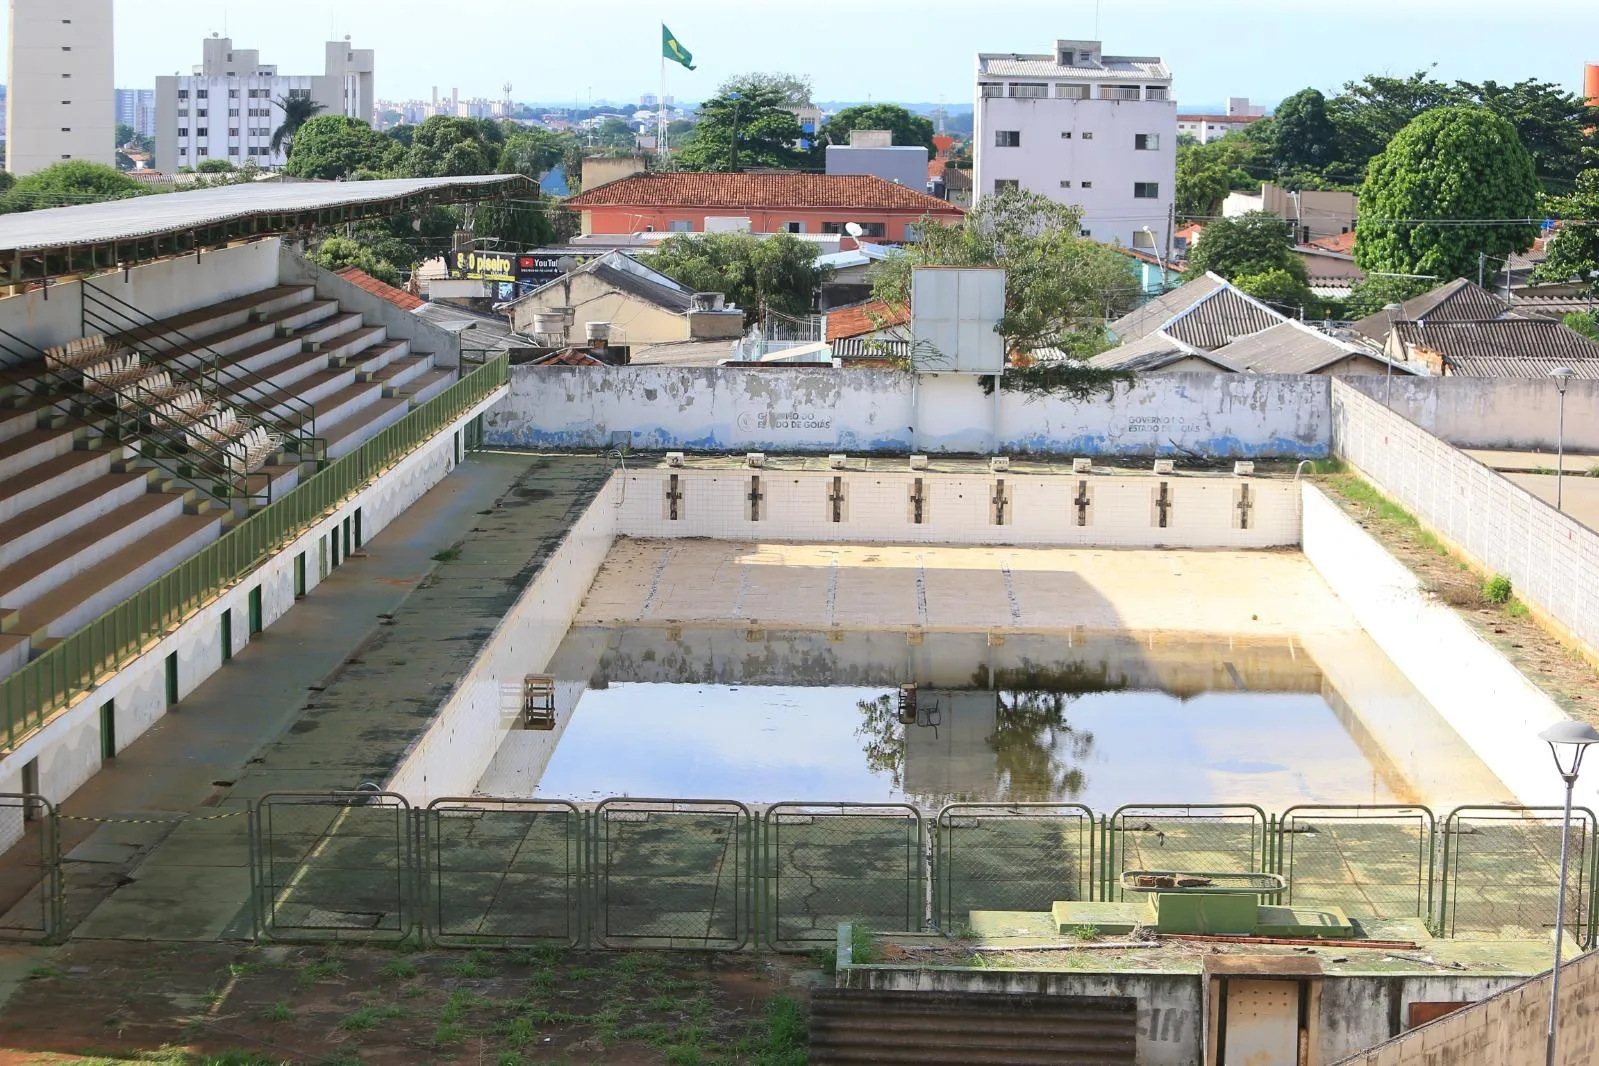 Parque Nacional de Brasília reabre acesso a piscinas